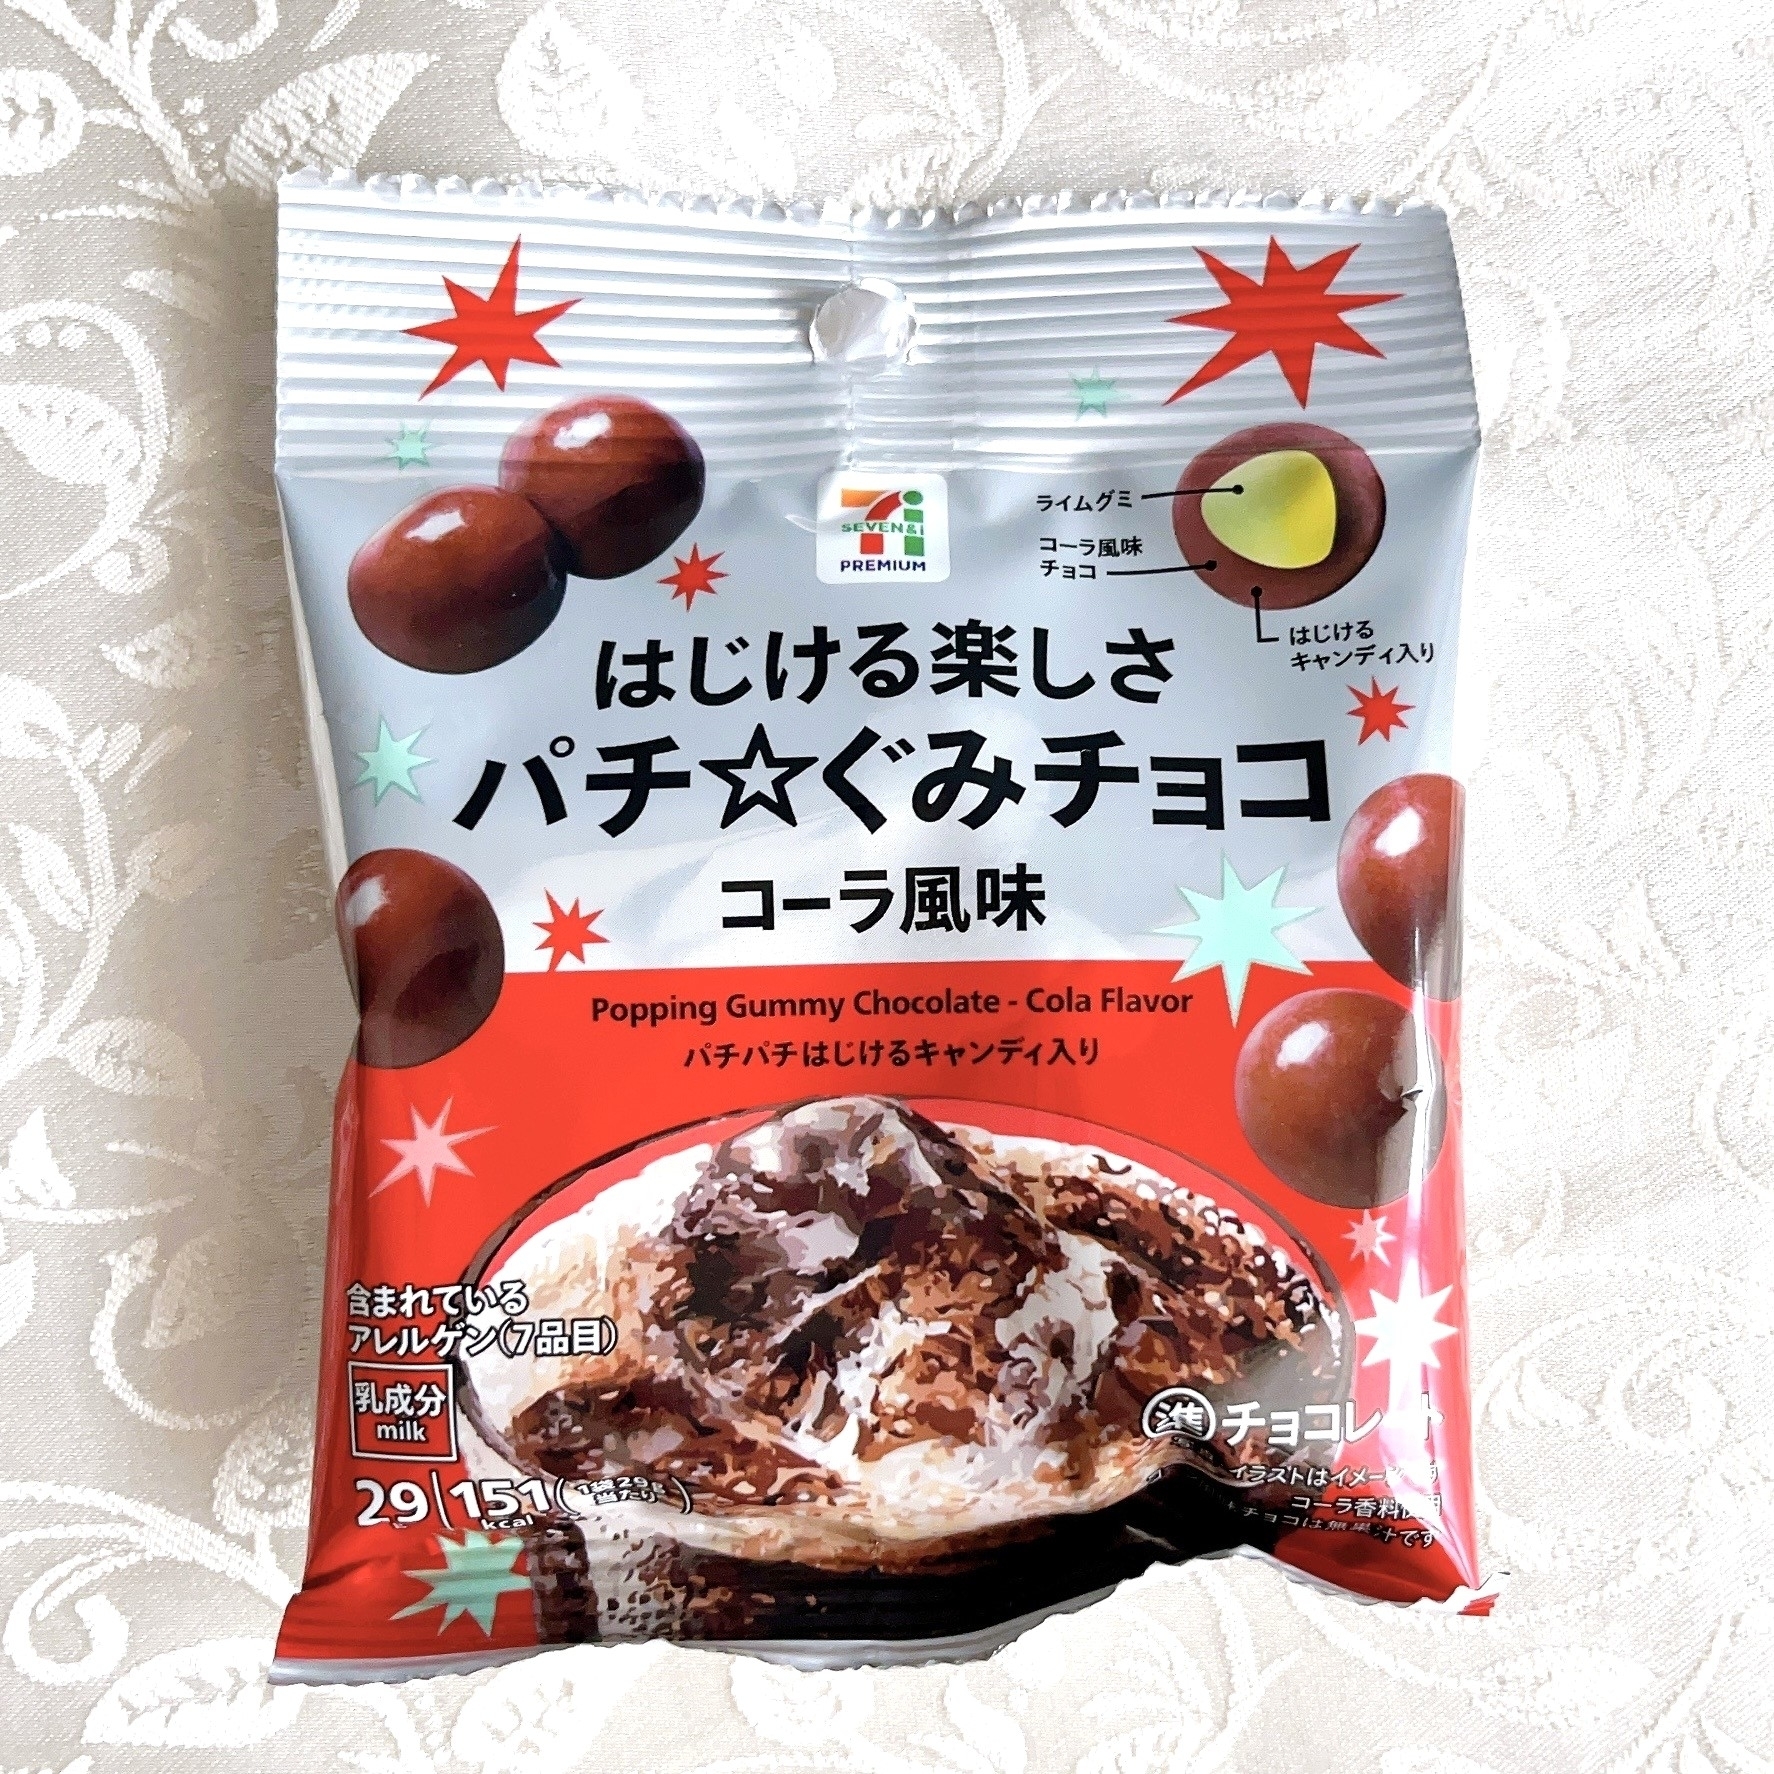 セブン-イレブンのおすすめお菓子「パチ☆ぐみチョコ コーラ風味」